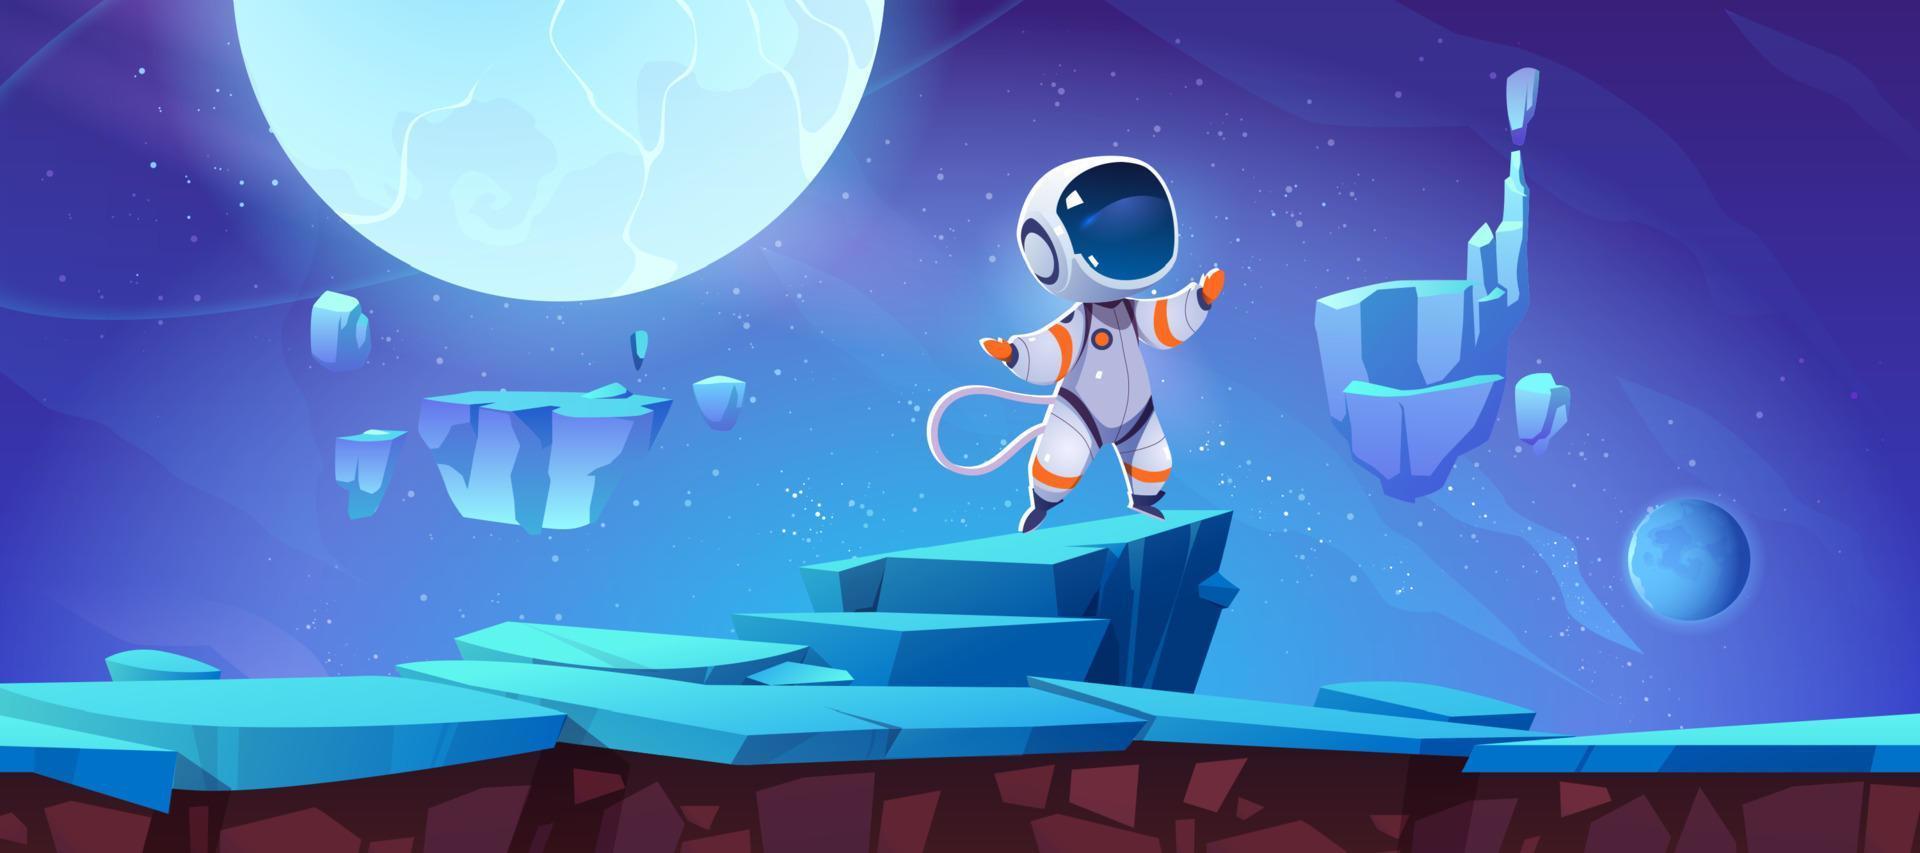 plataforma de juego con astronauta en planeta alienígena vector